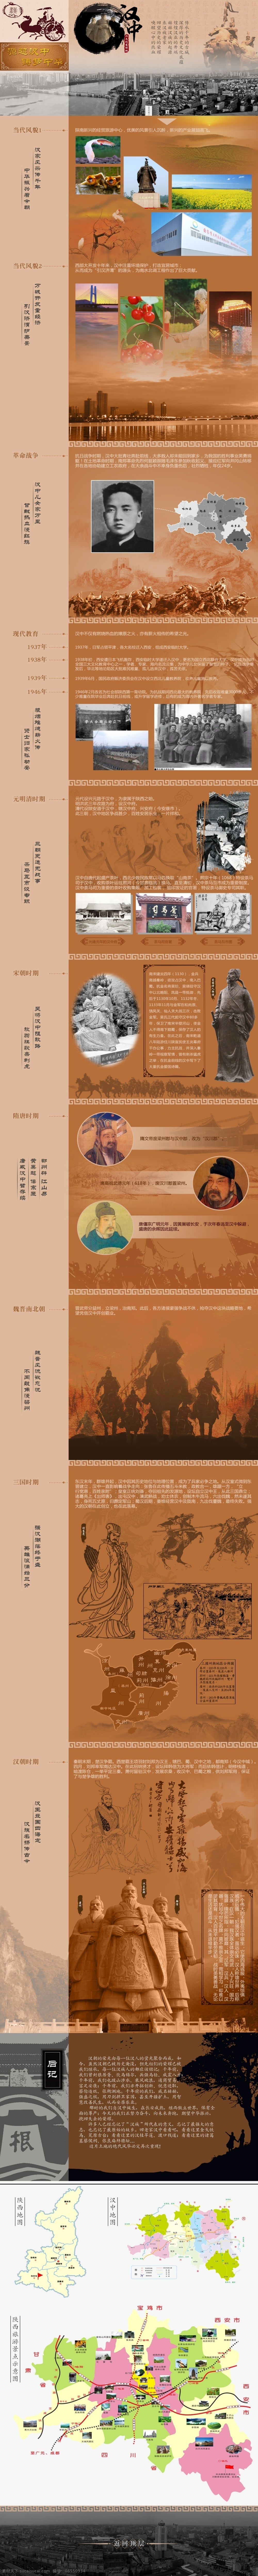 汉 文化 寻根 之旅 专题 页面 汉文化 汉族 汉中寻根之旅 汉中历史